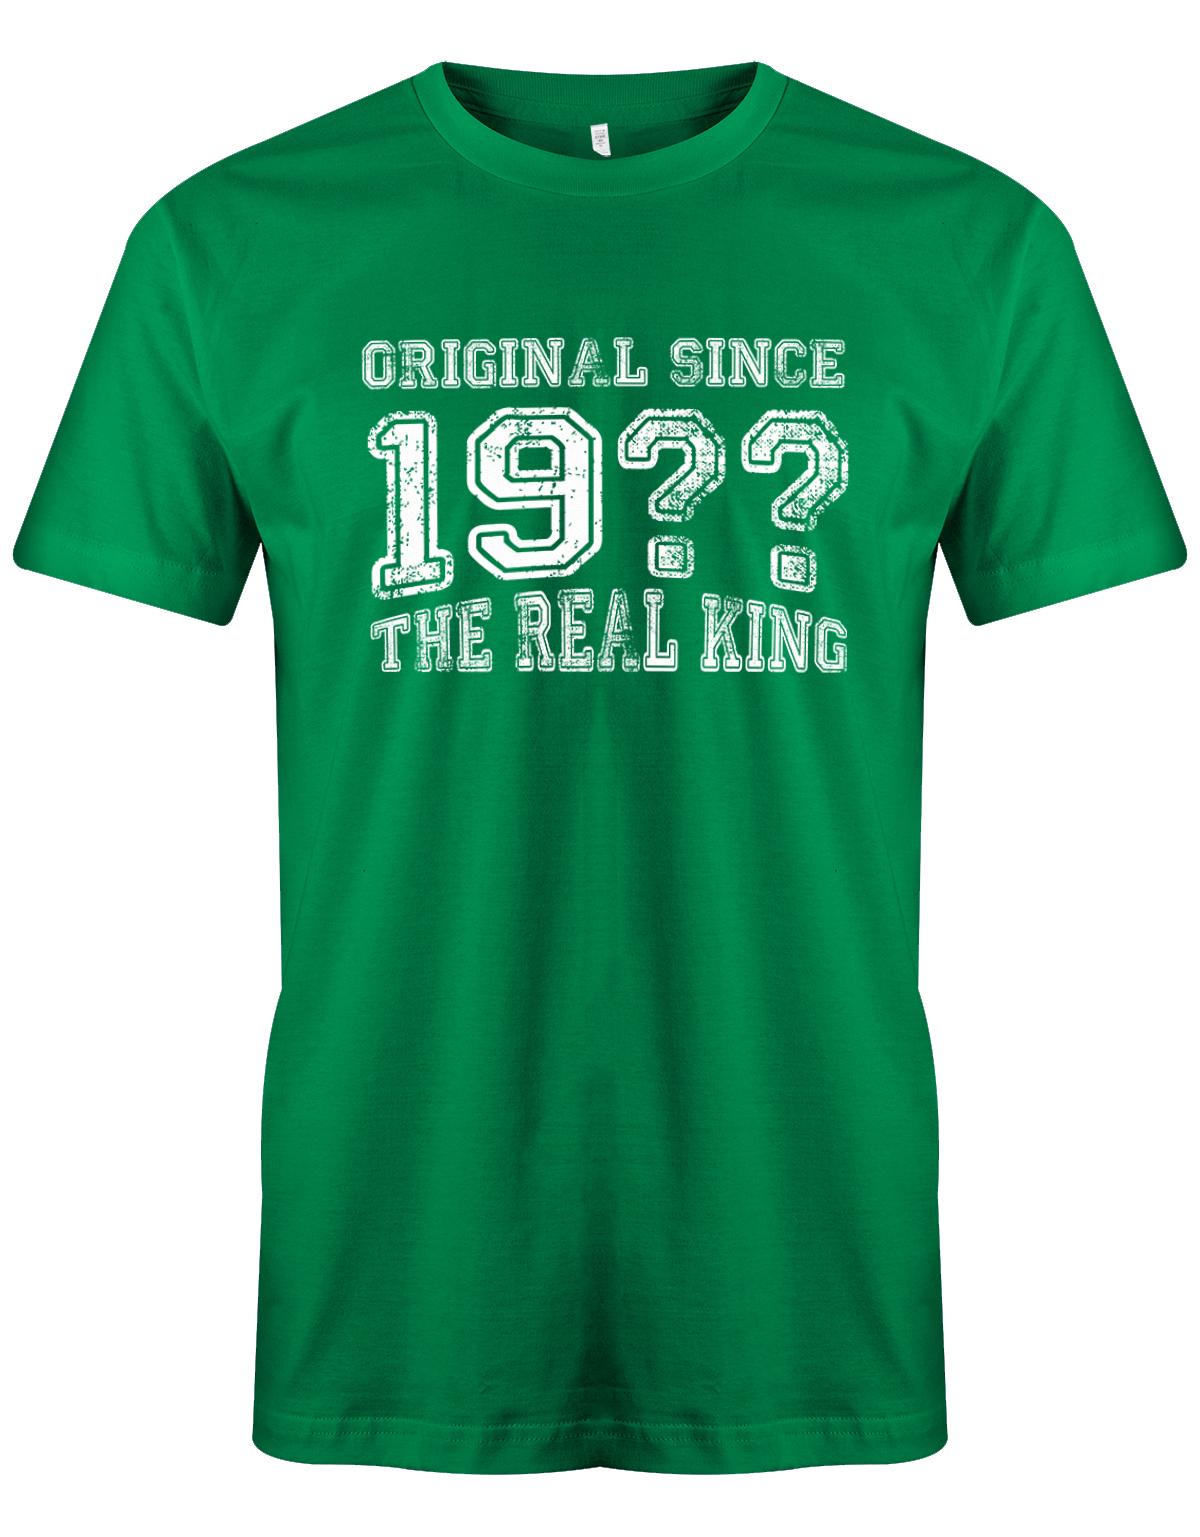 Original-Since-The-Real-King-Herren-Shirt-gruen